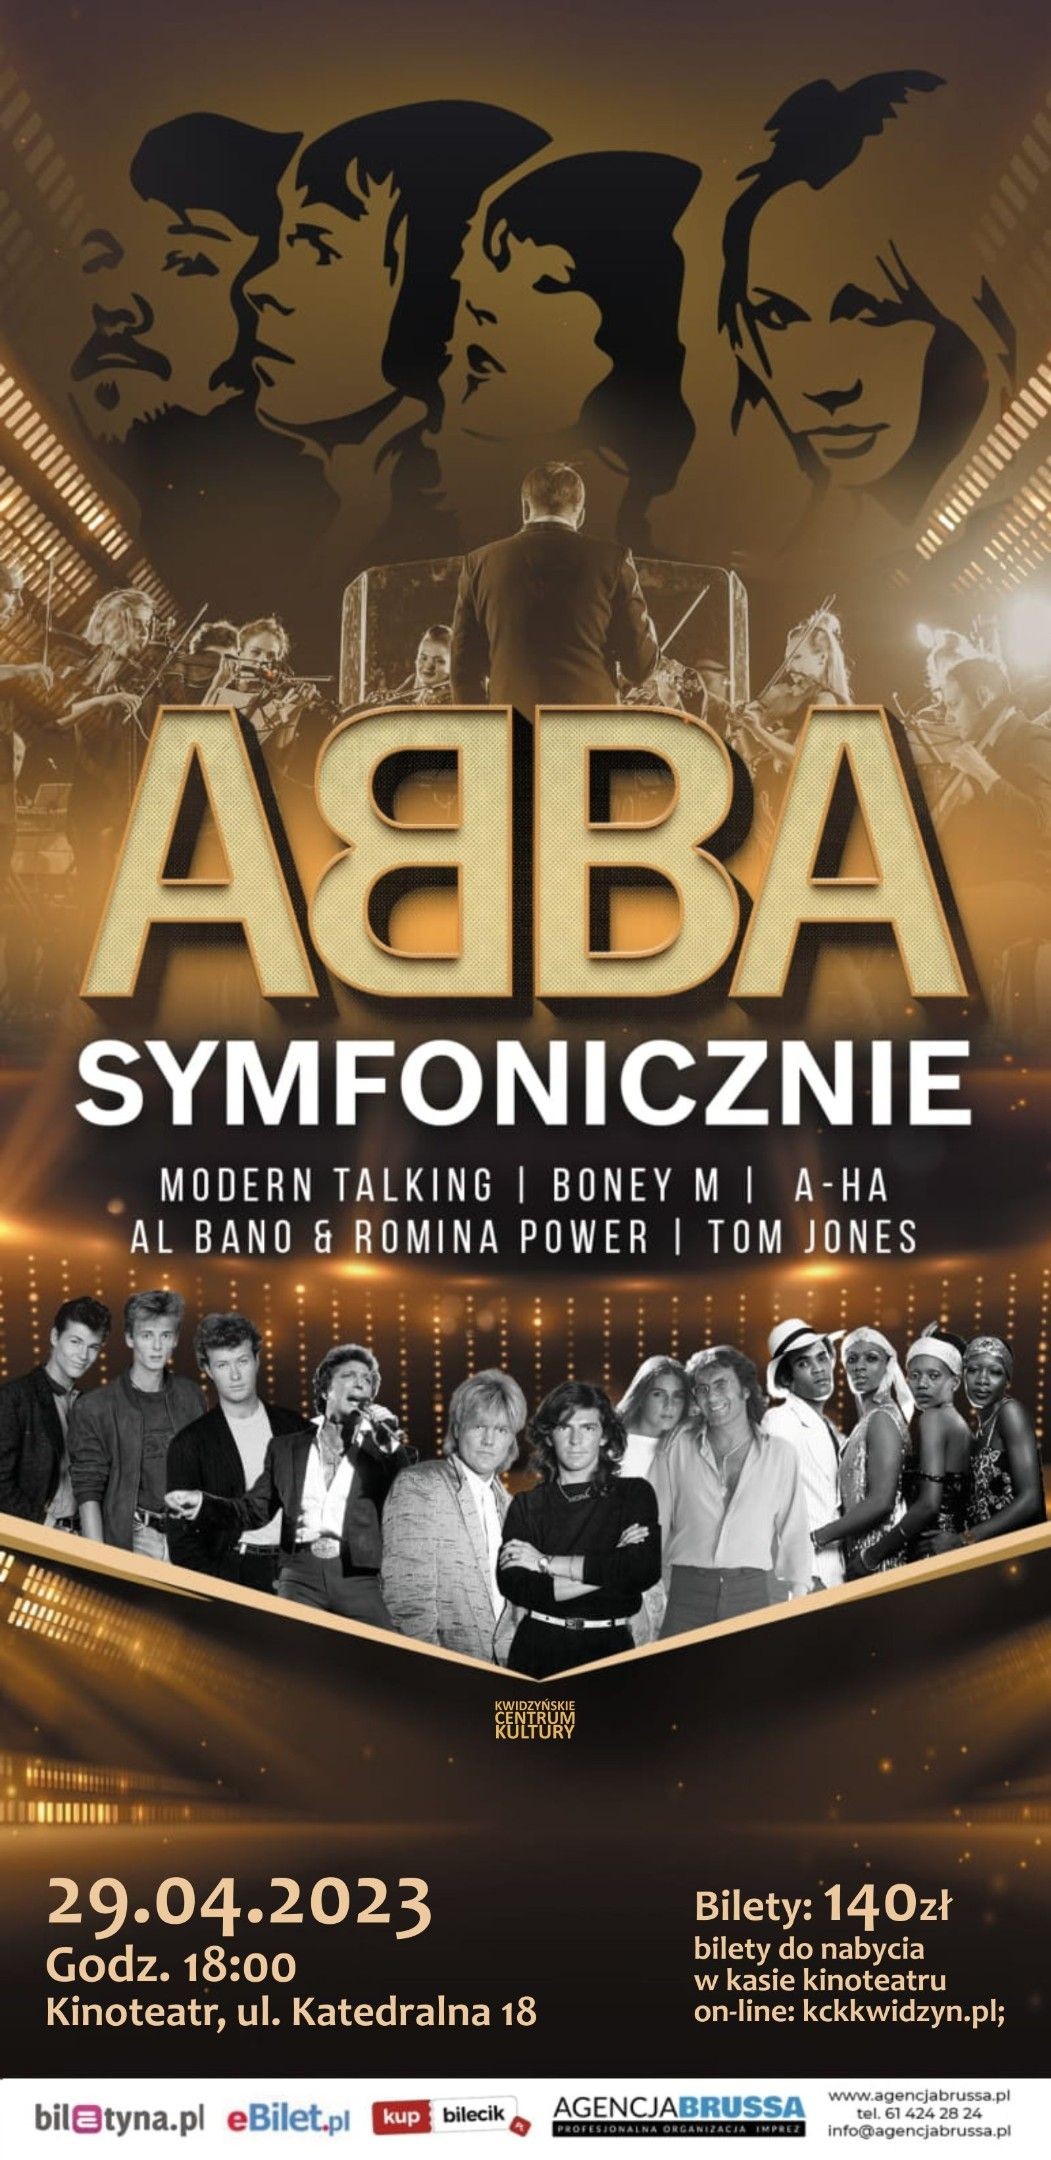 Obraz dla galerii: 29.04.2023 ABBA Symfonicznie - koncert